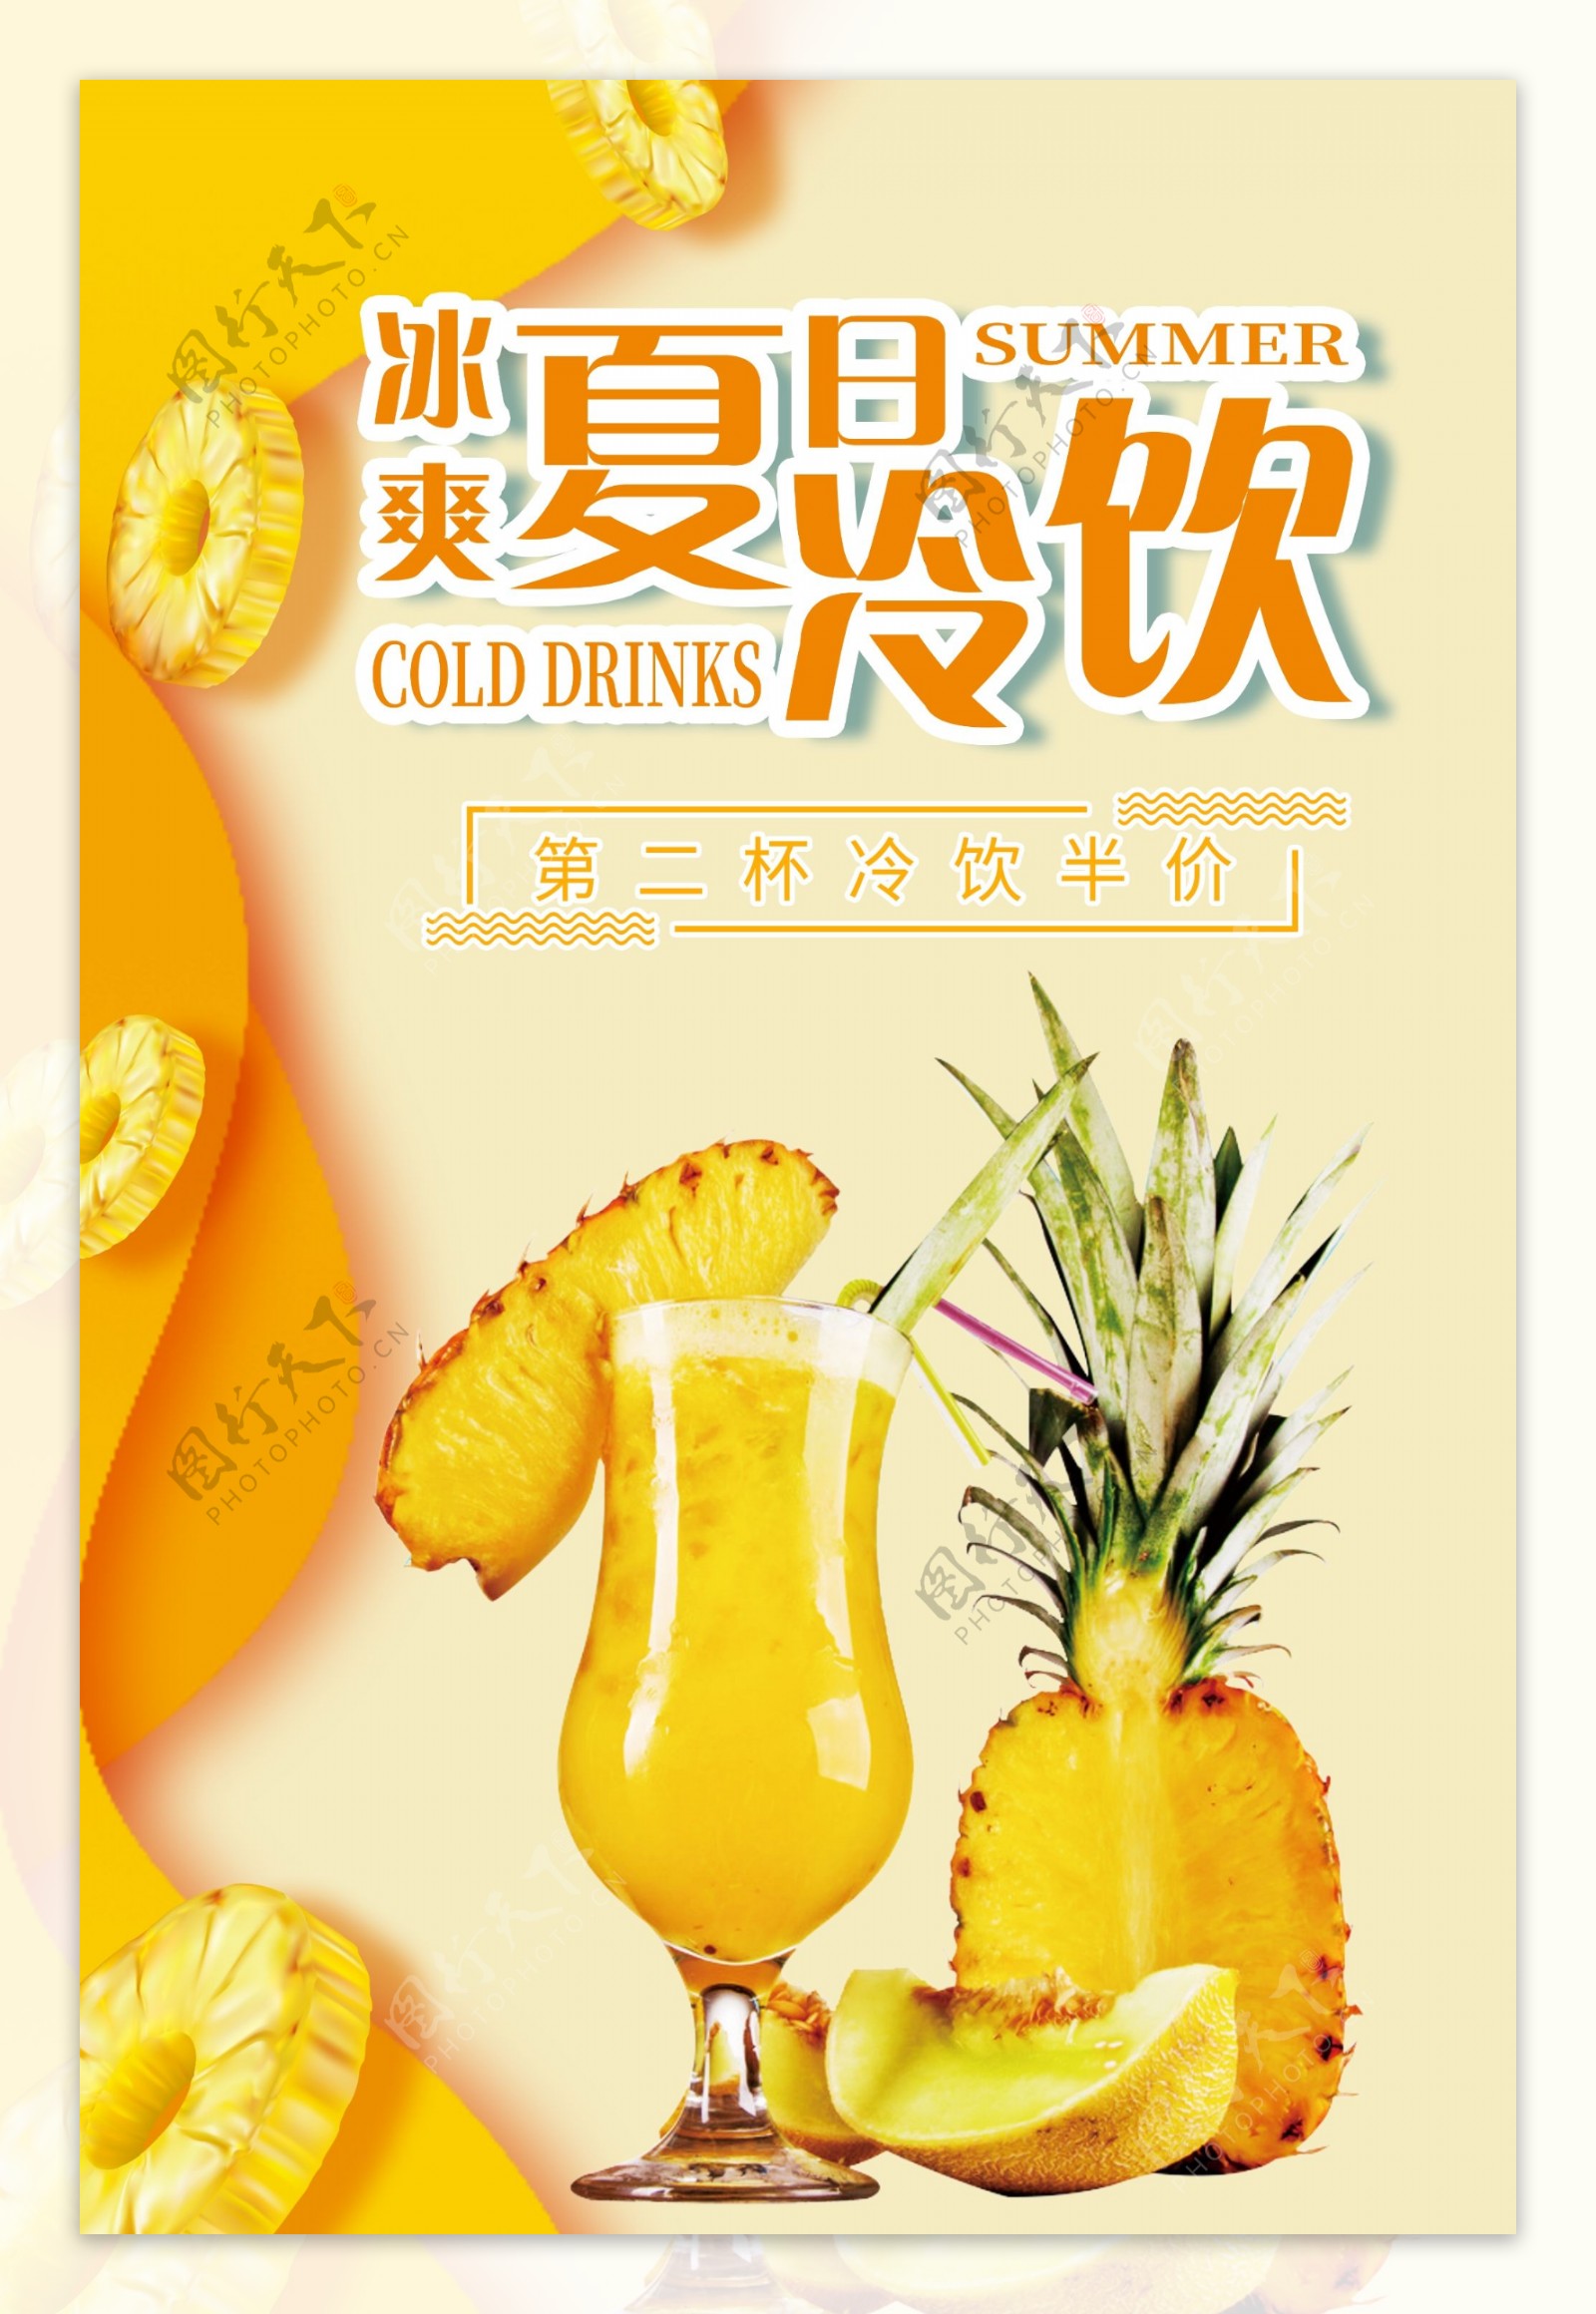 鲜榨菠萝汁宣传海报.psd